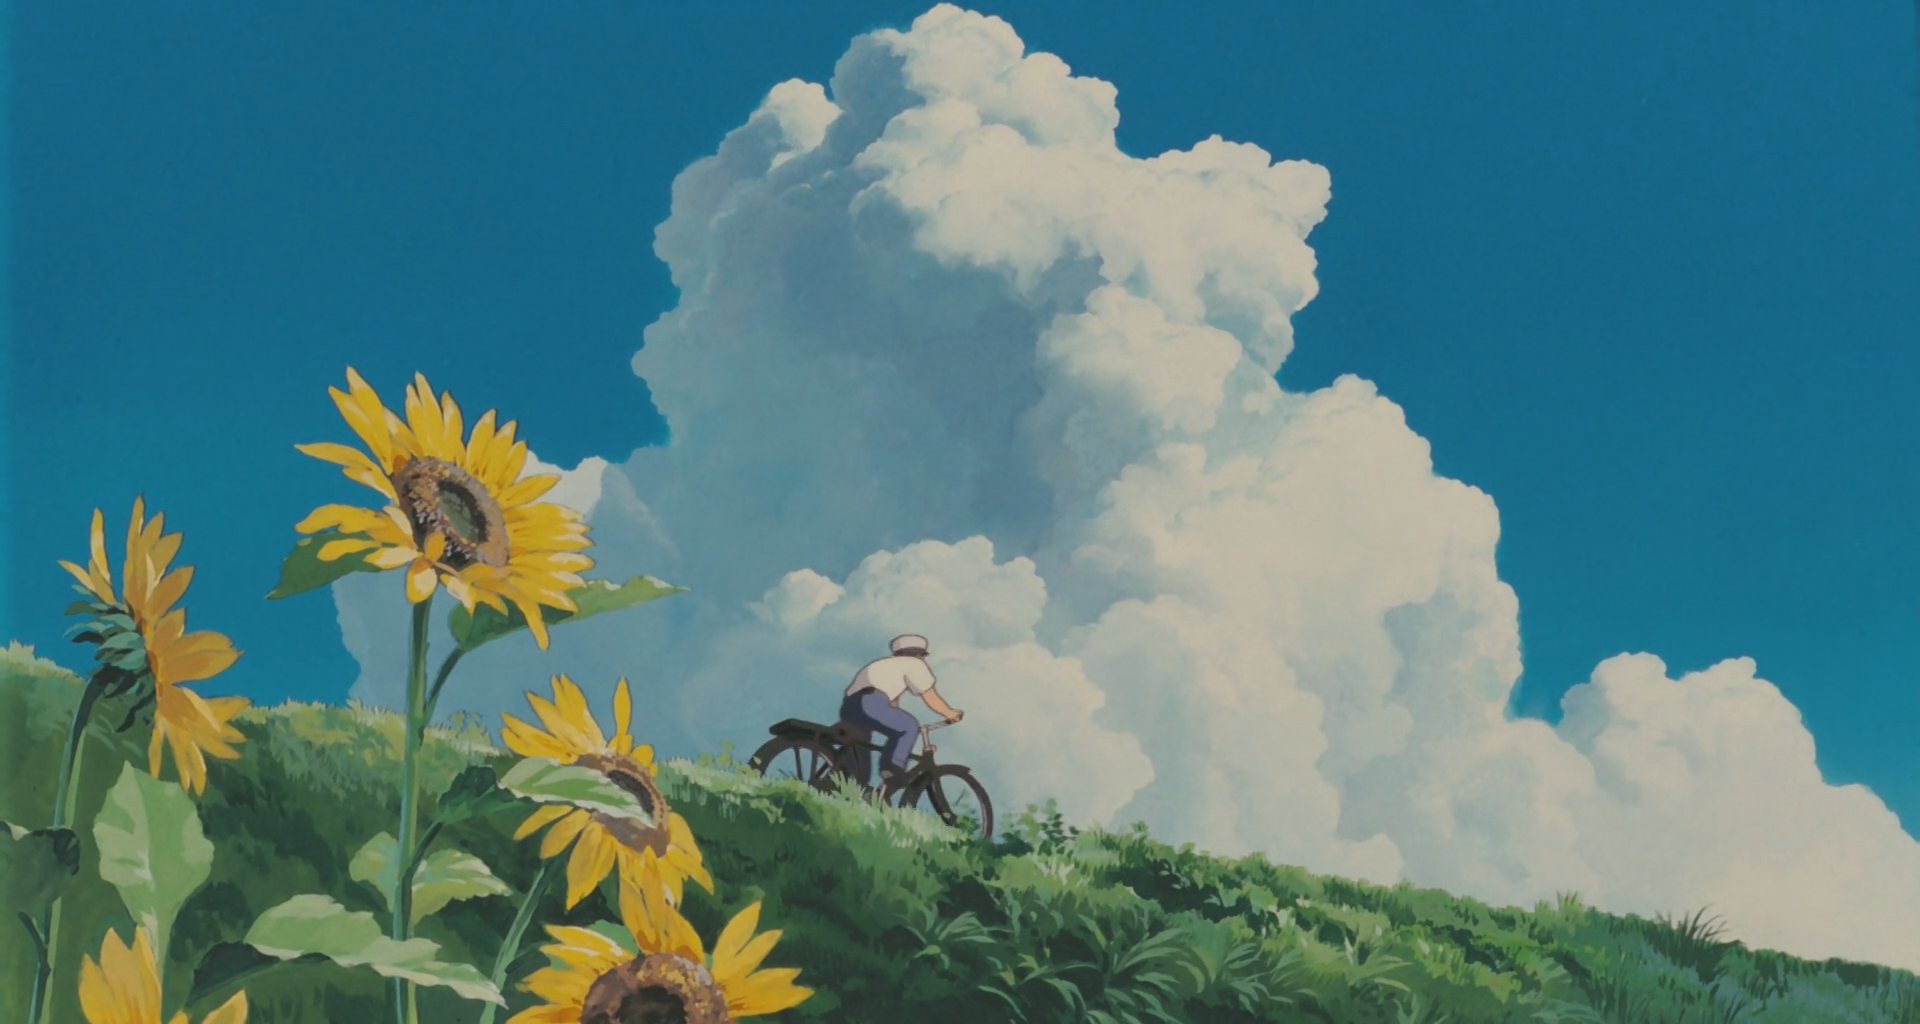 Với các bức tranh tuyệt đẹp trong các bộ phim nổi tiếng của Studio Ghibli như Spirited Away hay Totoro, hình nền laptop Ghibli như một món quà dành cho những người yêu thích nghệ thuật và điện ảnh. Việc lựa chọn hình nền này sẽ thể hiện sự đam mê với truyền thống văn hóa của đất nước Nhật Bản, và bạn sẽ thấy được sự khác biệt khi lựa chọn hình nền đơn giản thay vì hình nền mặc định trên máy tính.